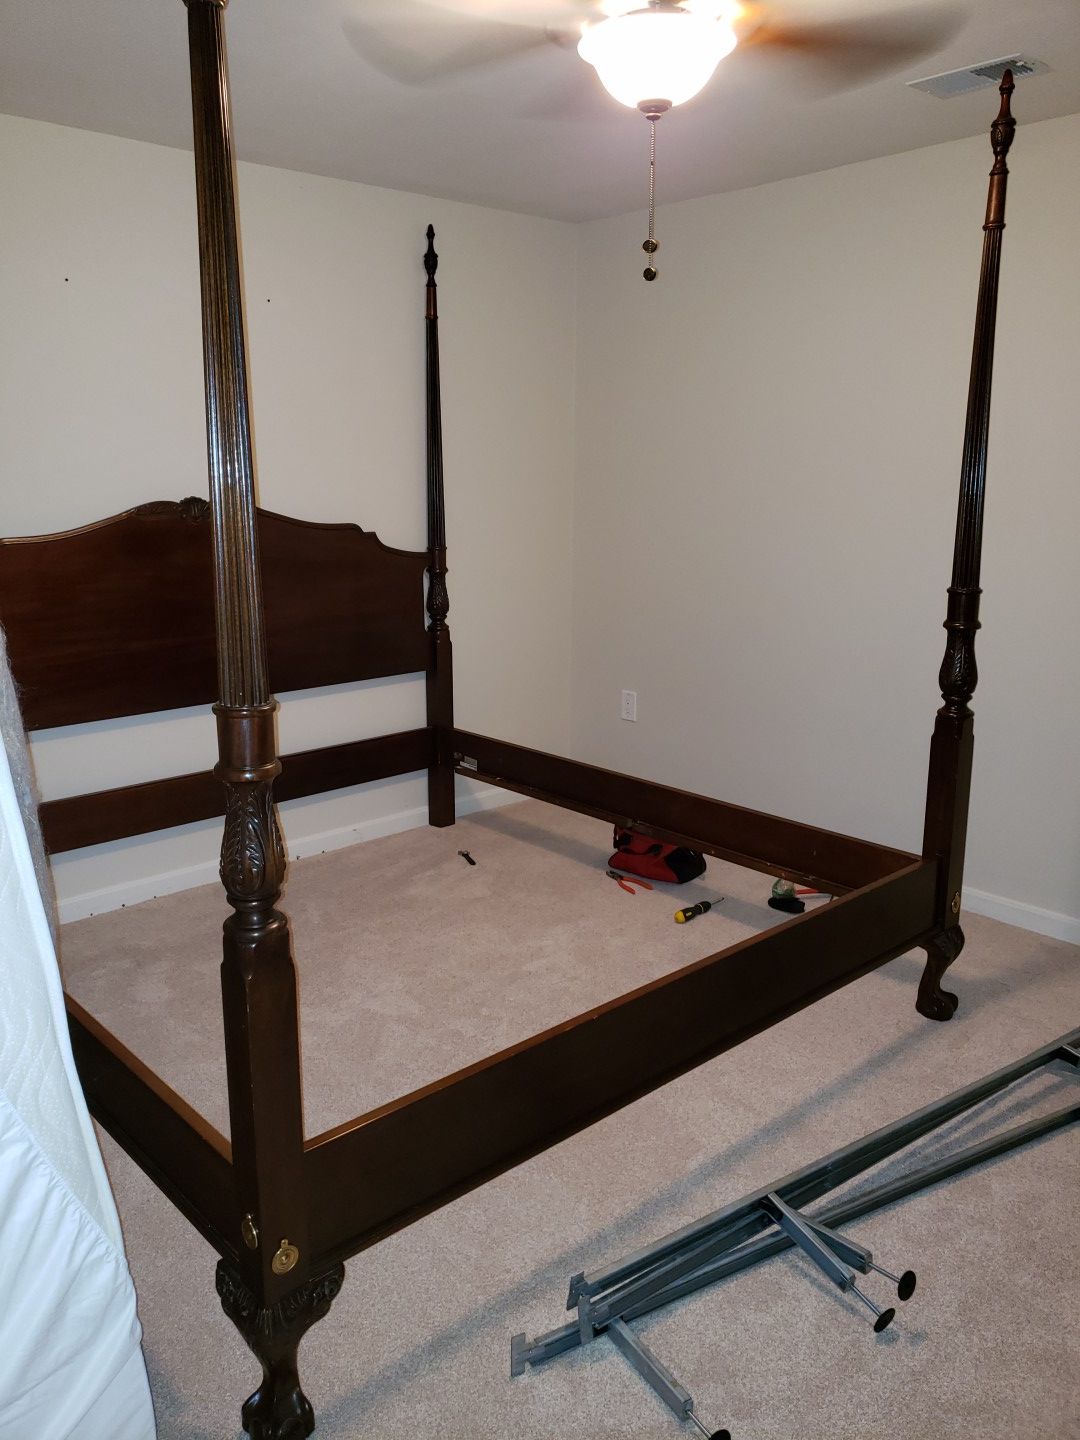 King size bed frame